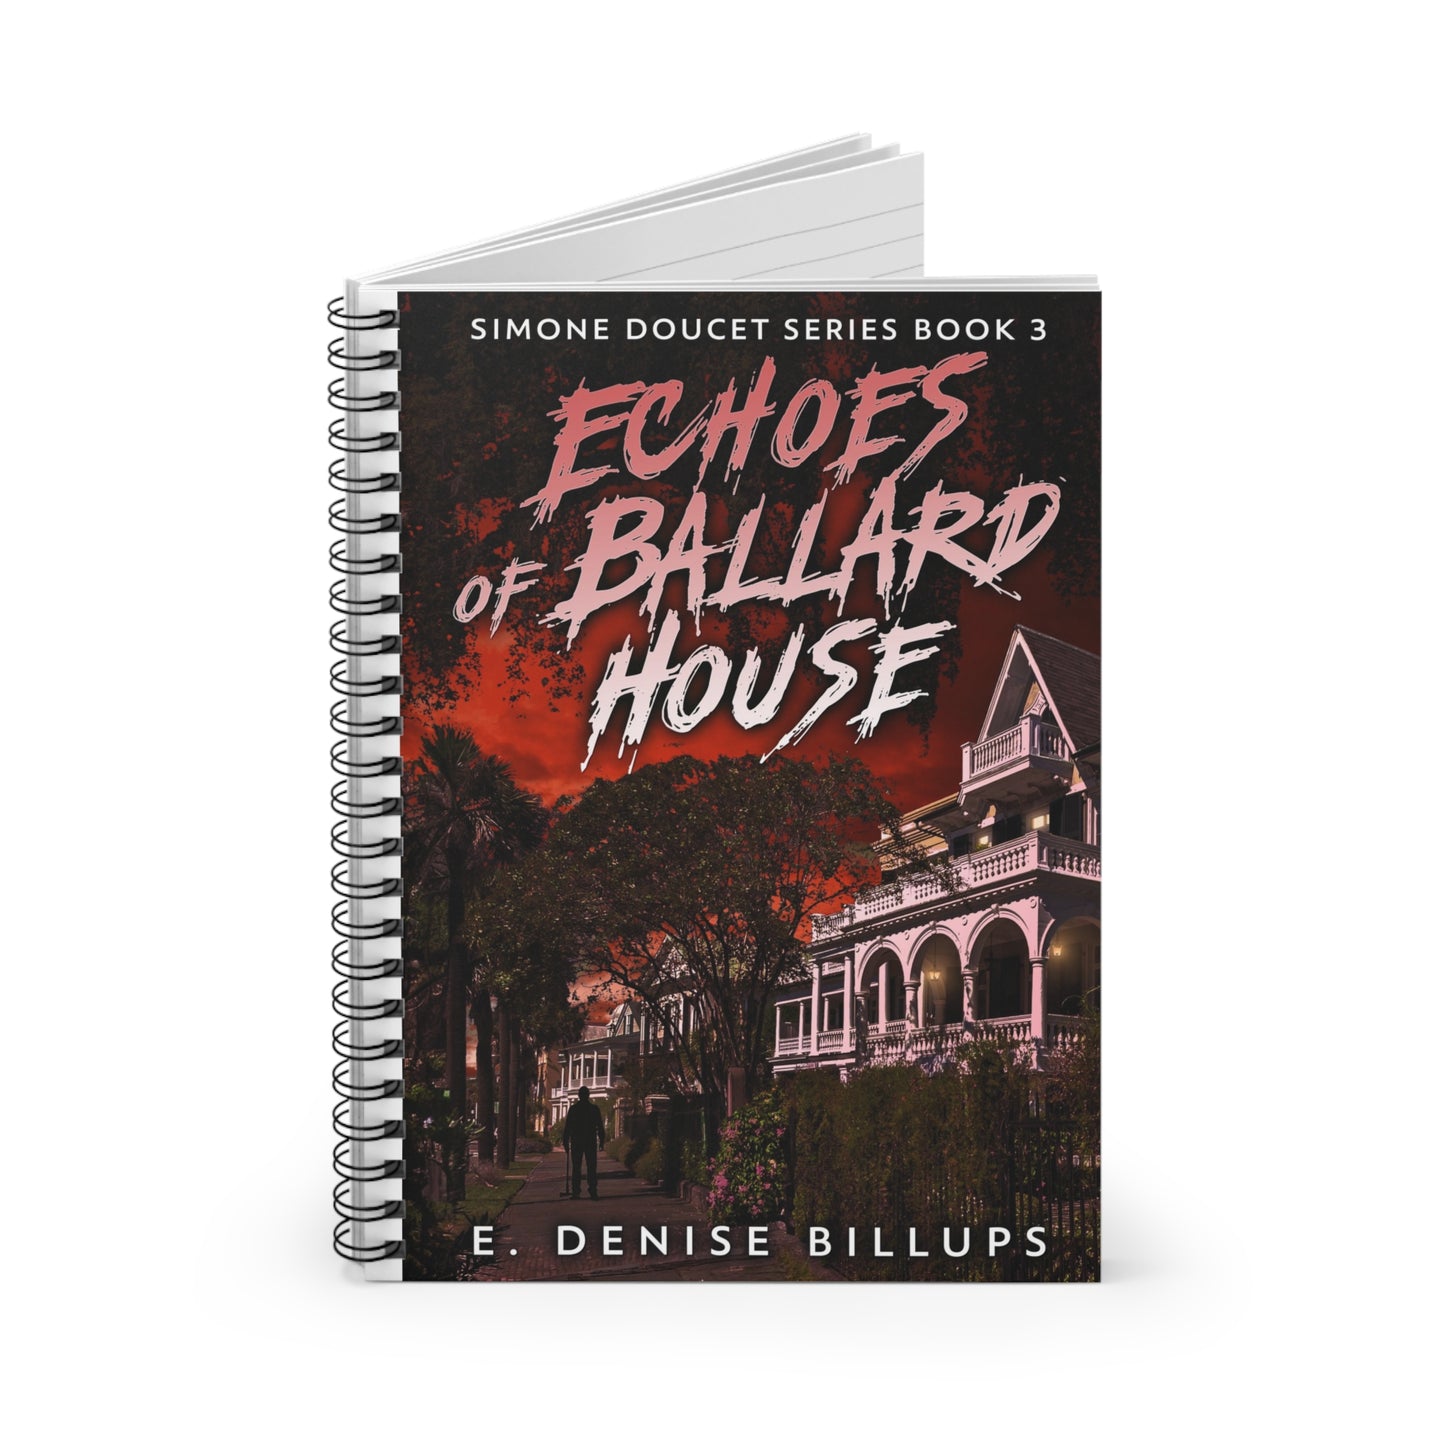 Echoes of Ballard House - Spiral Notebook